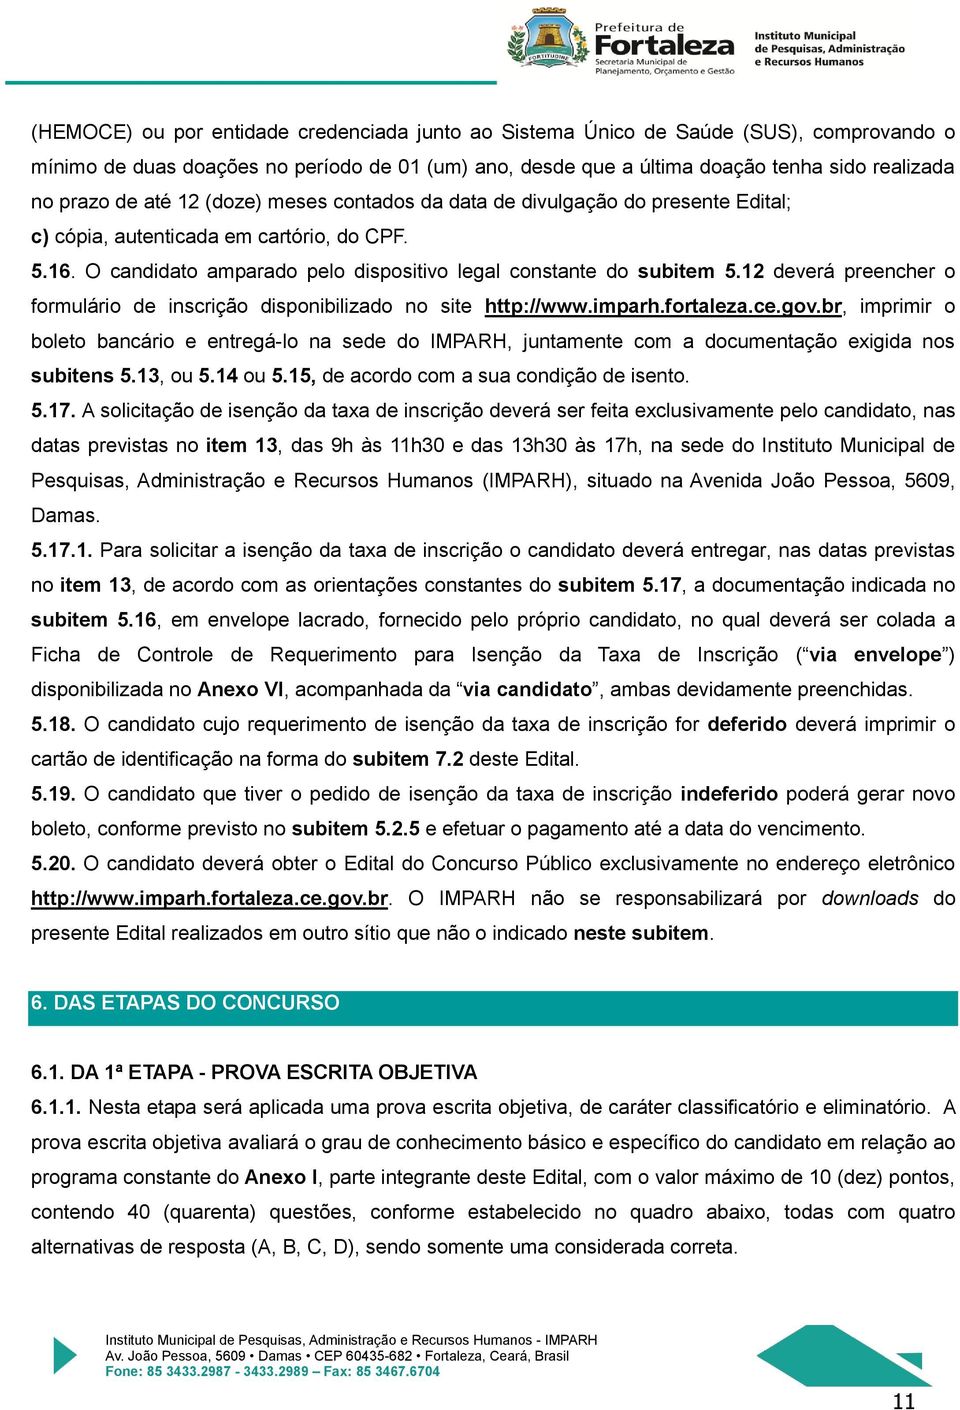 12 deverá preencher o formulário de inscrição disponibilizado no site http://www.imparh.fortaleza.ce.gov.